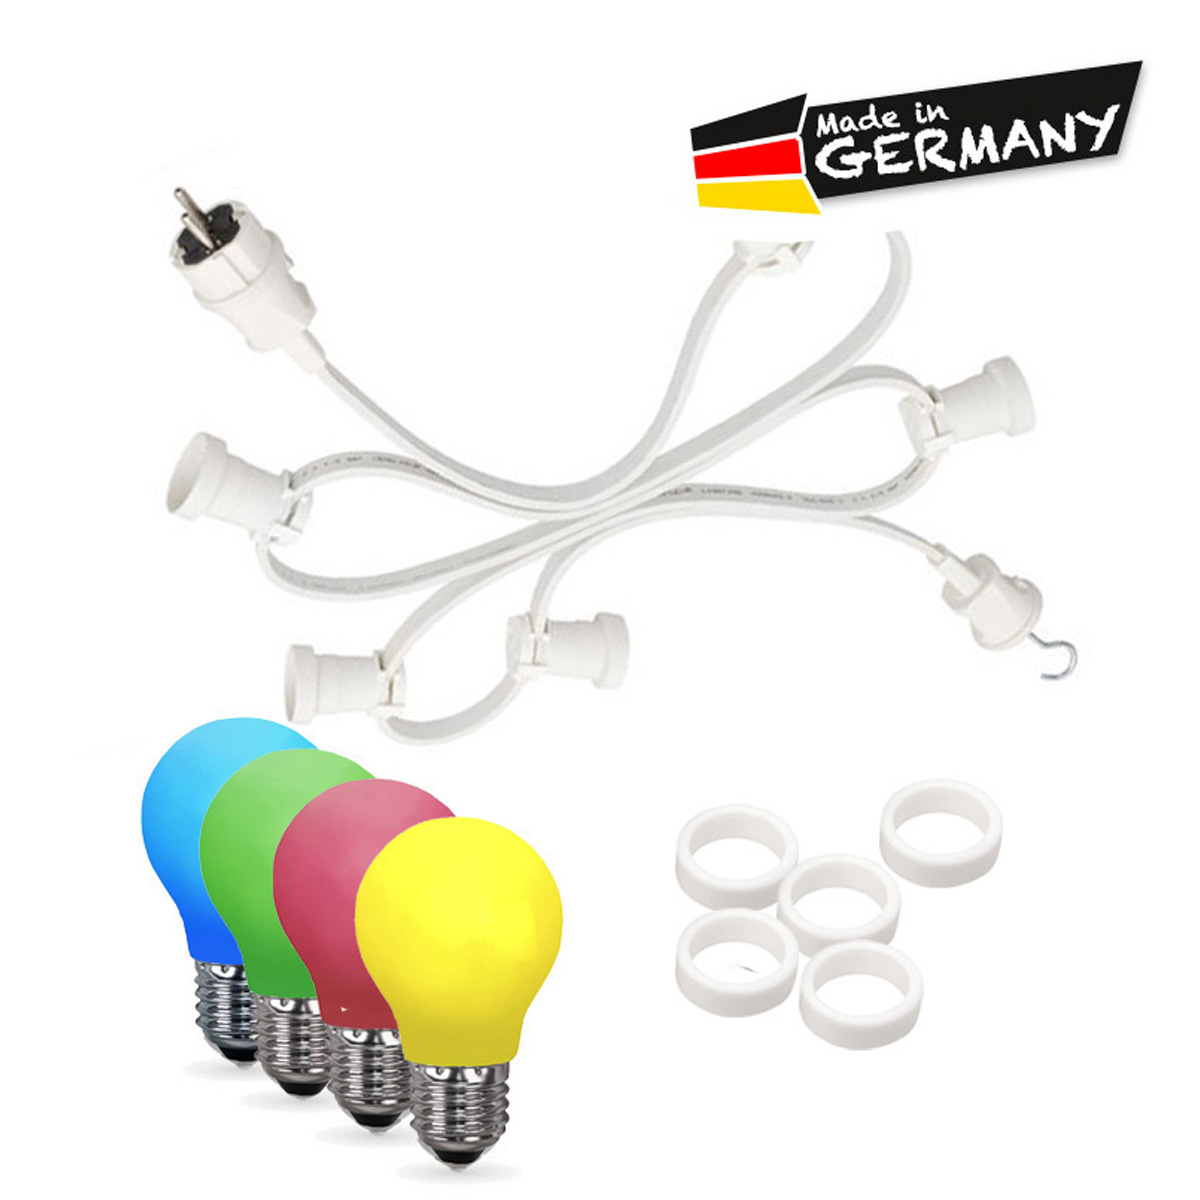 Illu-/Partylichterkette 20m | Außenlichterkette weiß | Made in Germany | 30 x bunte LED Tropfenlampe